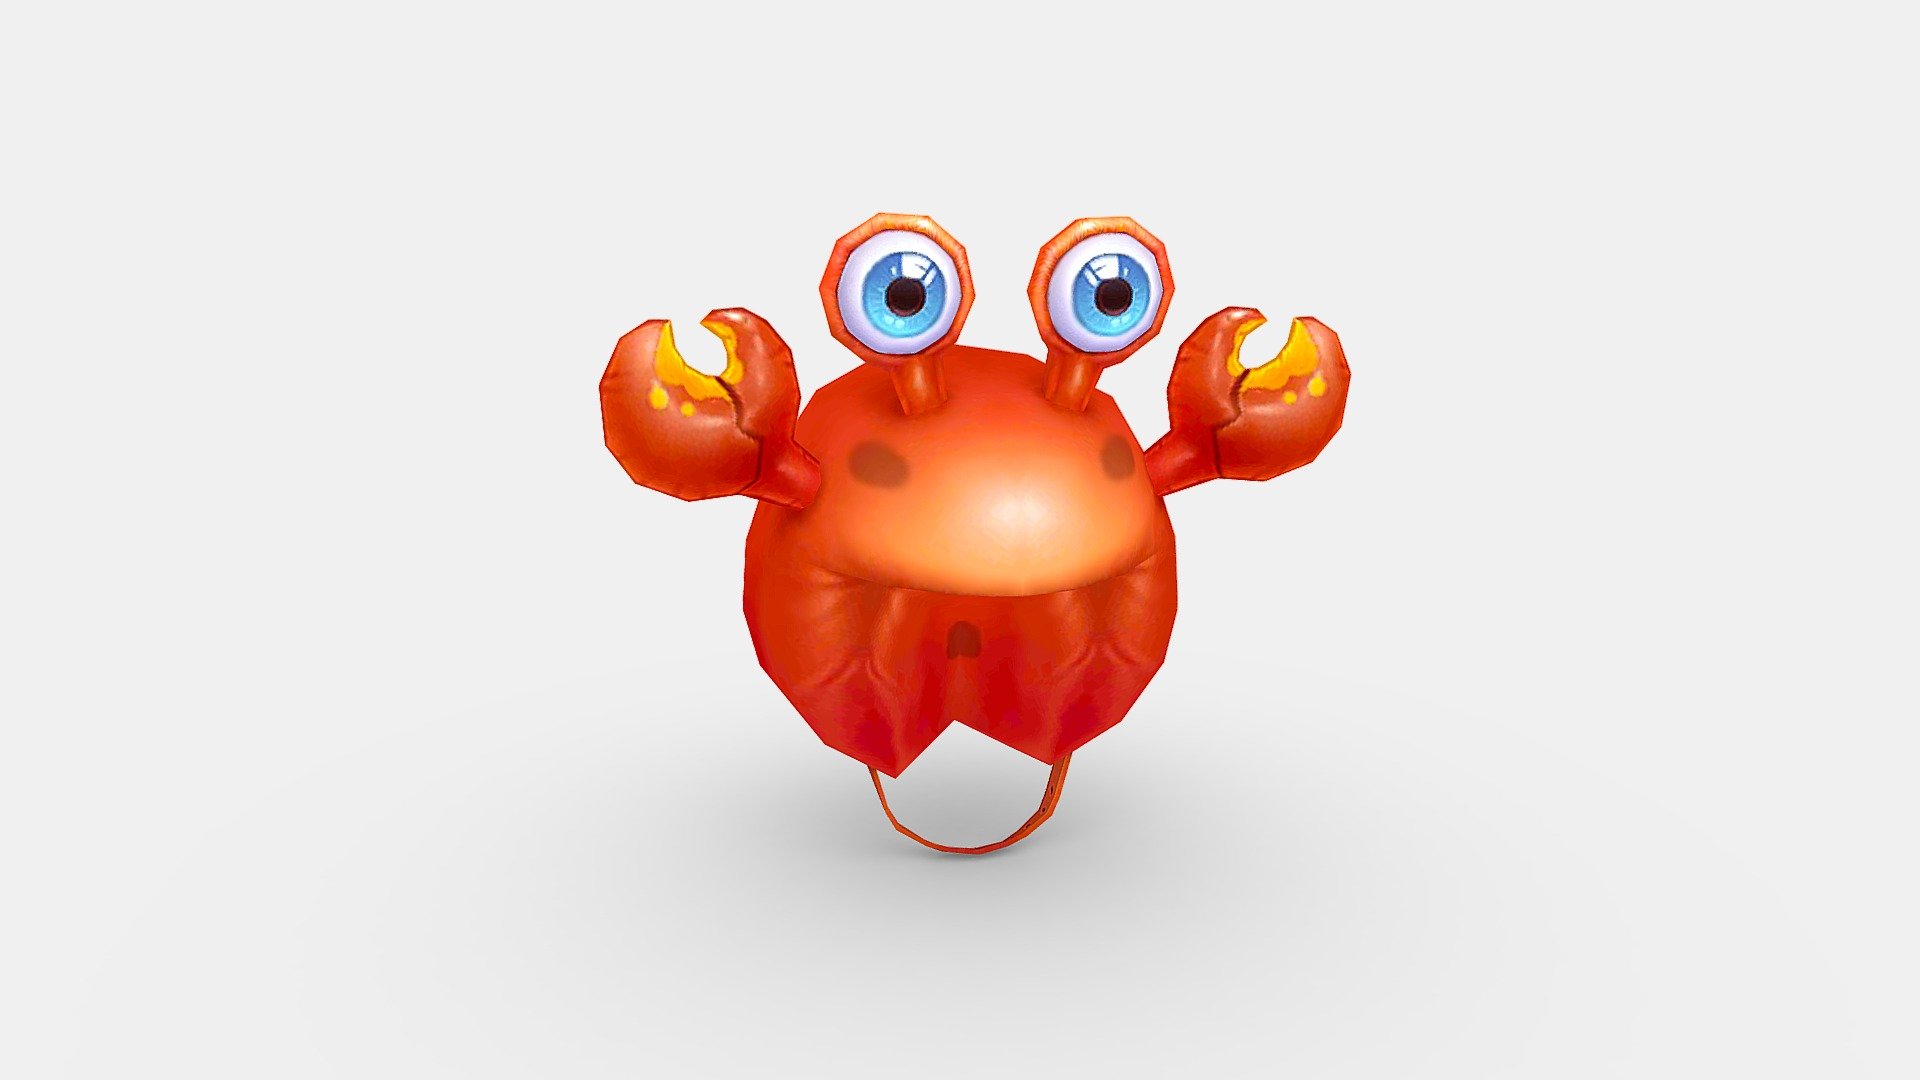 Cartoon crab hat - Show costumes - Cartoon crab hat - Show costumes - Buy Royalty Free 3D model by ler_cartoon (@lerrrrr) 3d model